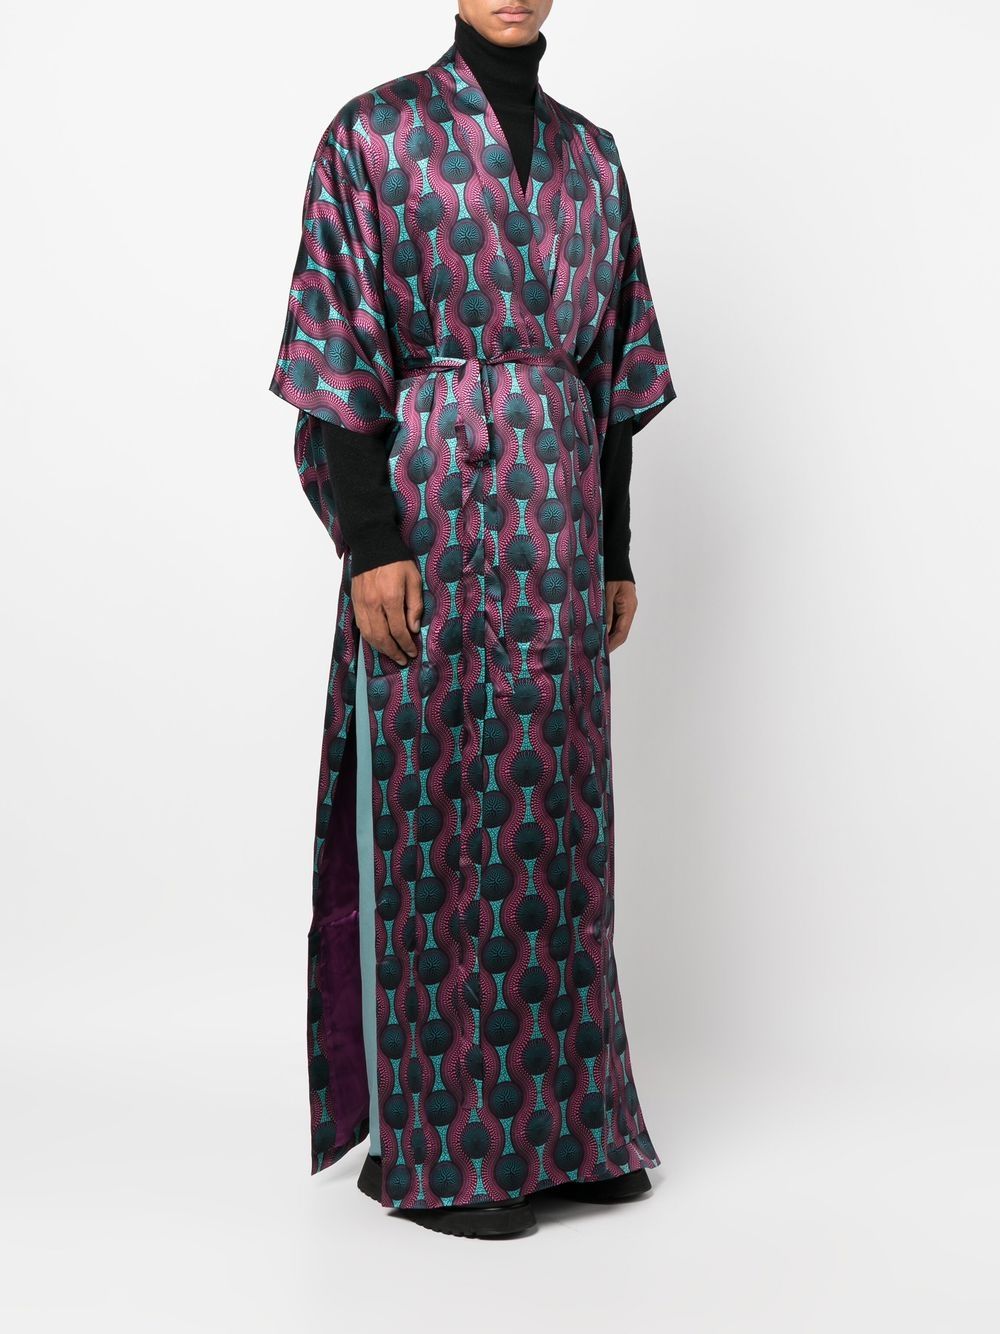 Ozwald boateng OZWALD BOATENG- Printed Silk Kimono Dress